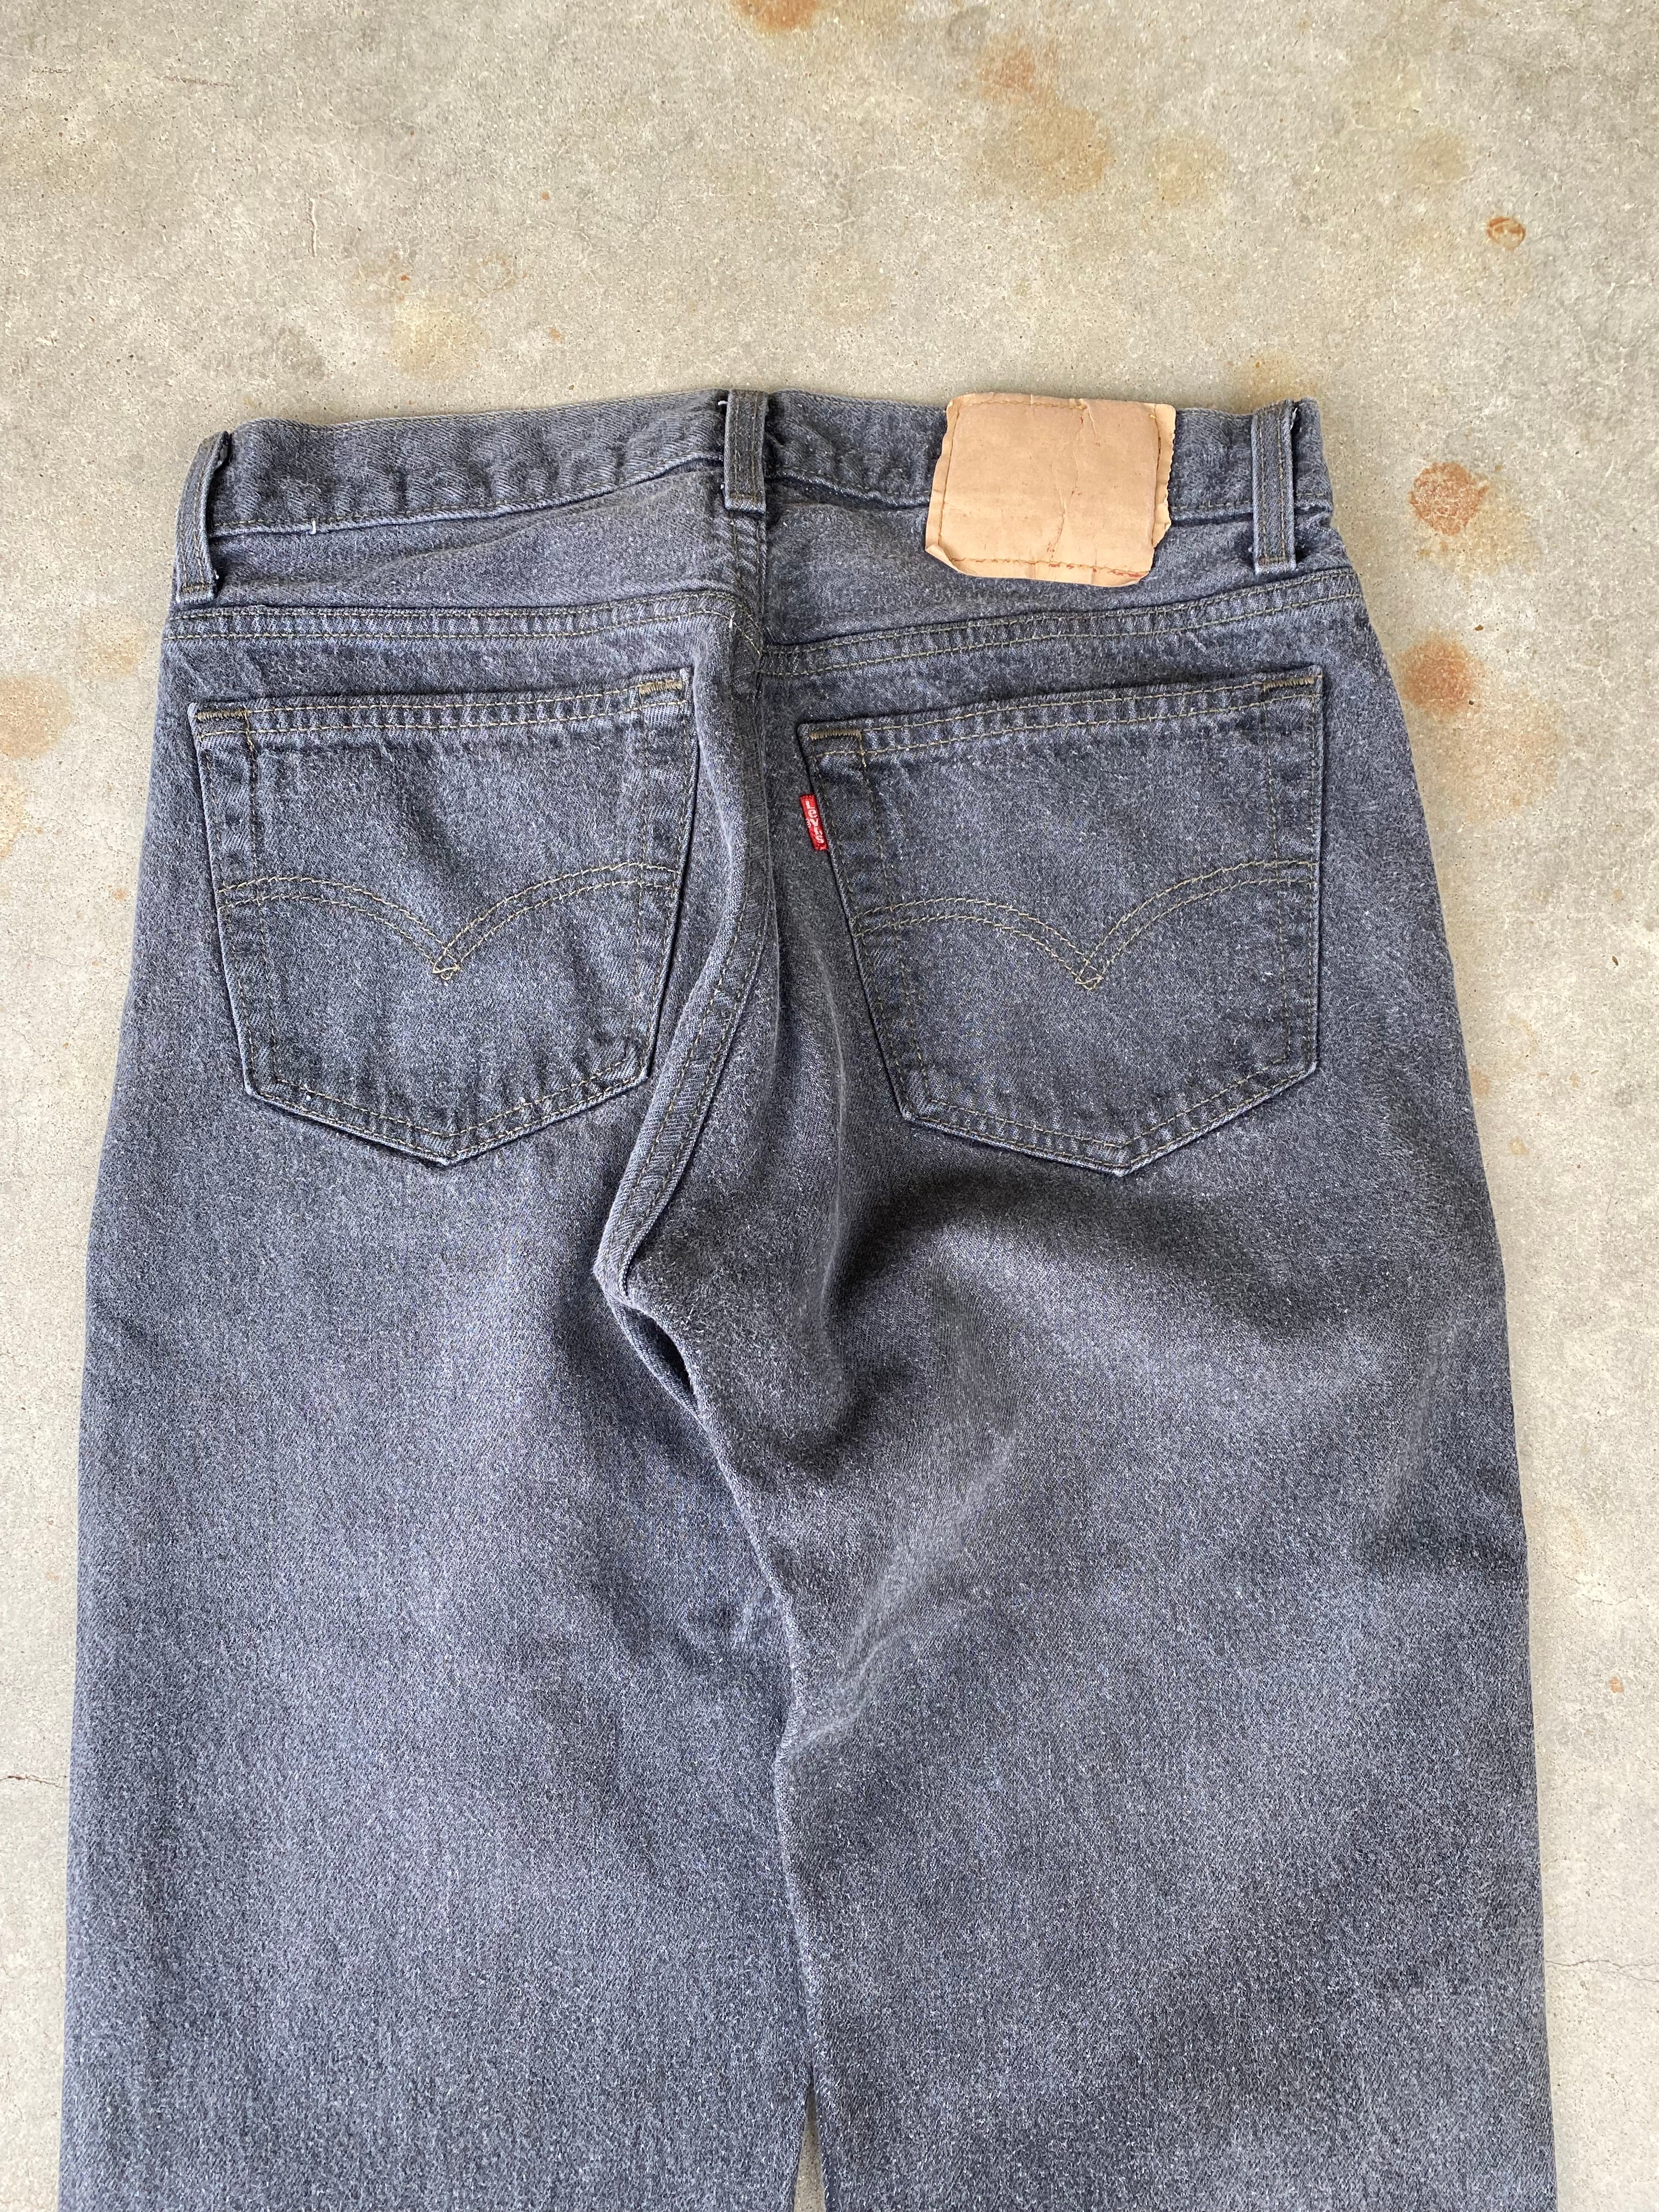 Vintage Levi's 501 Jeans (30"x31.5")